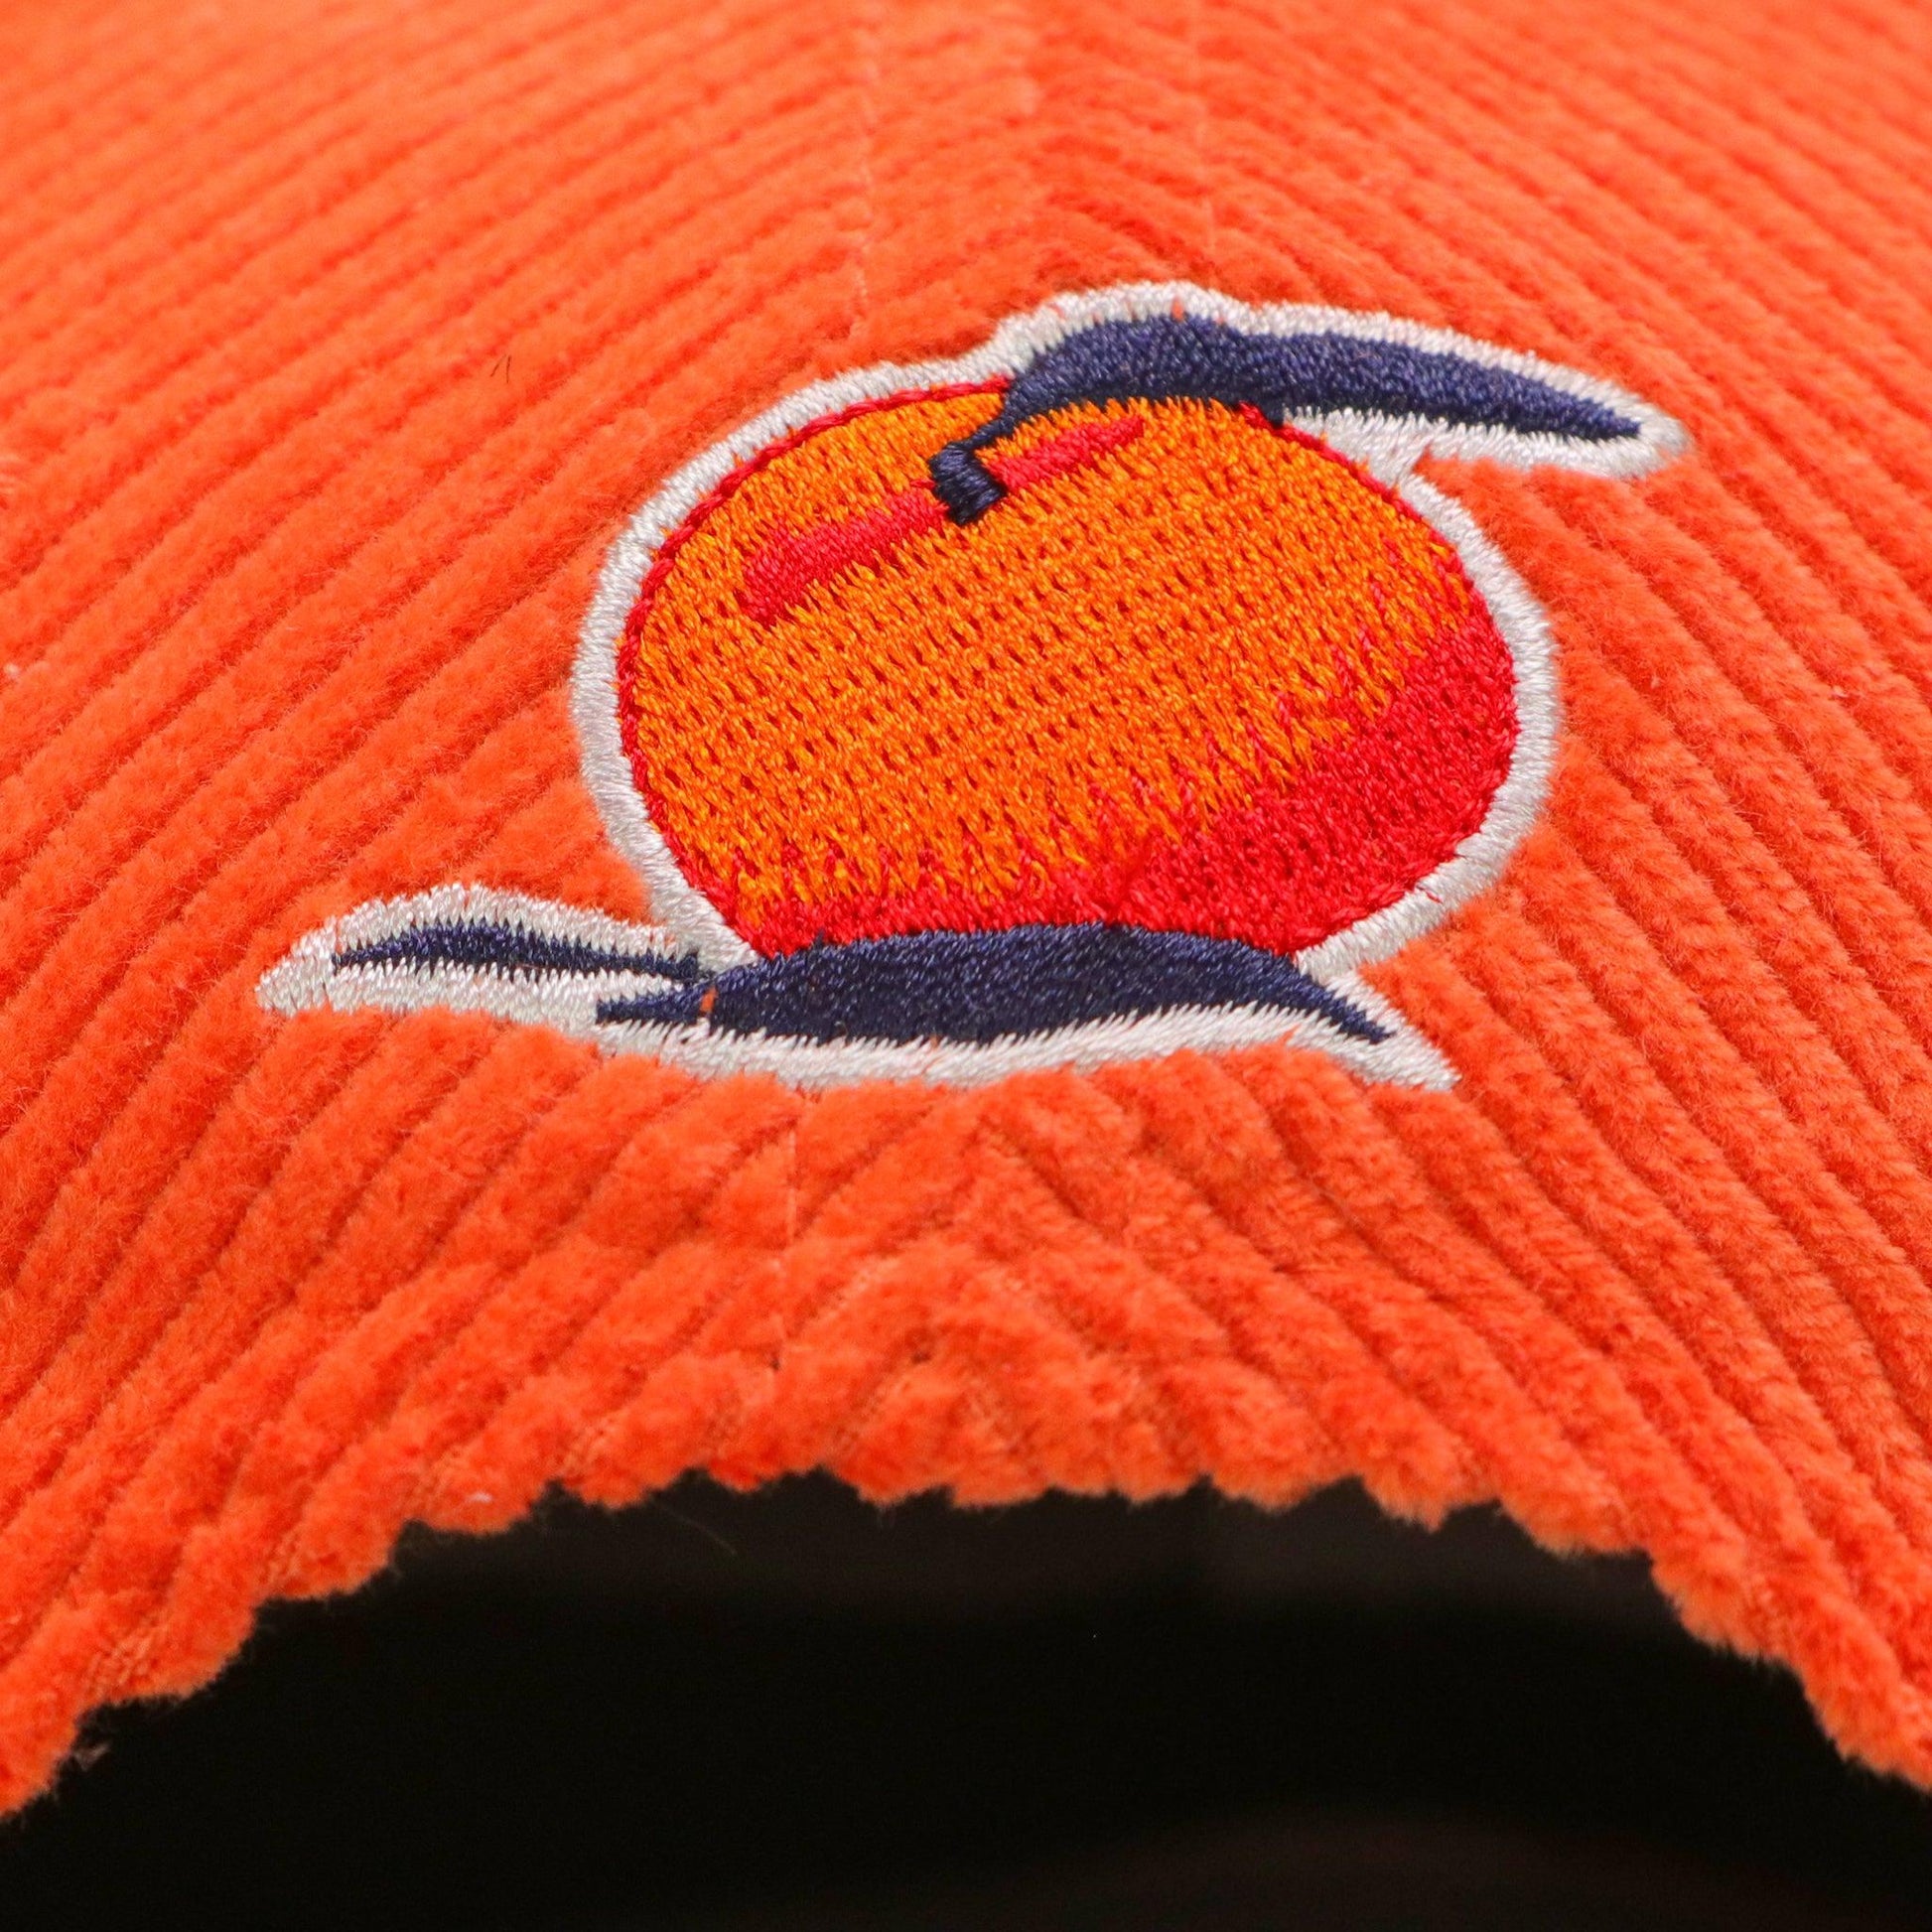 detail of peach logo